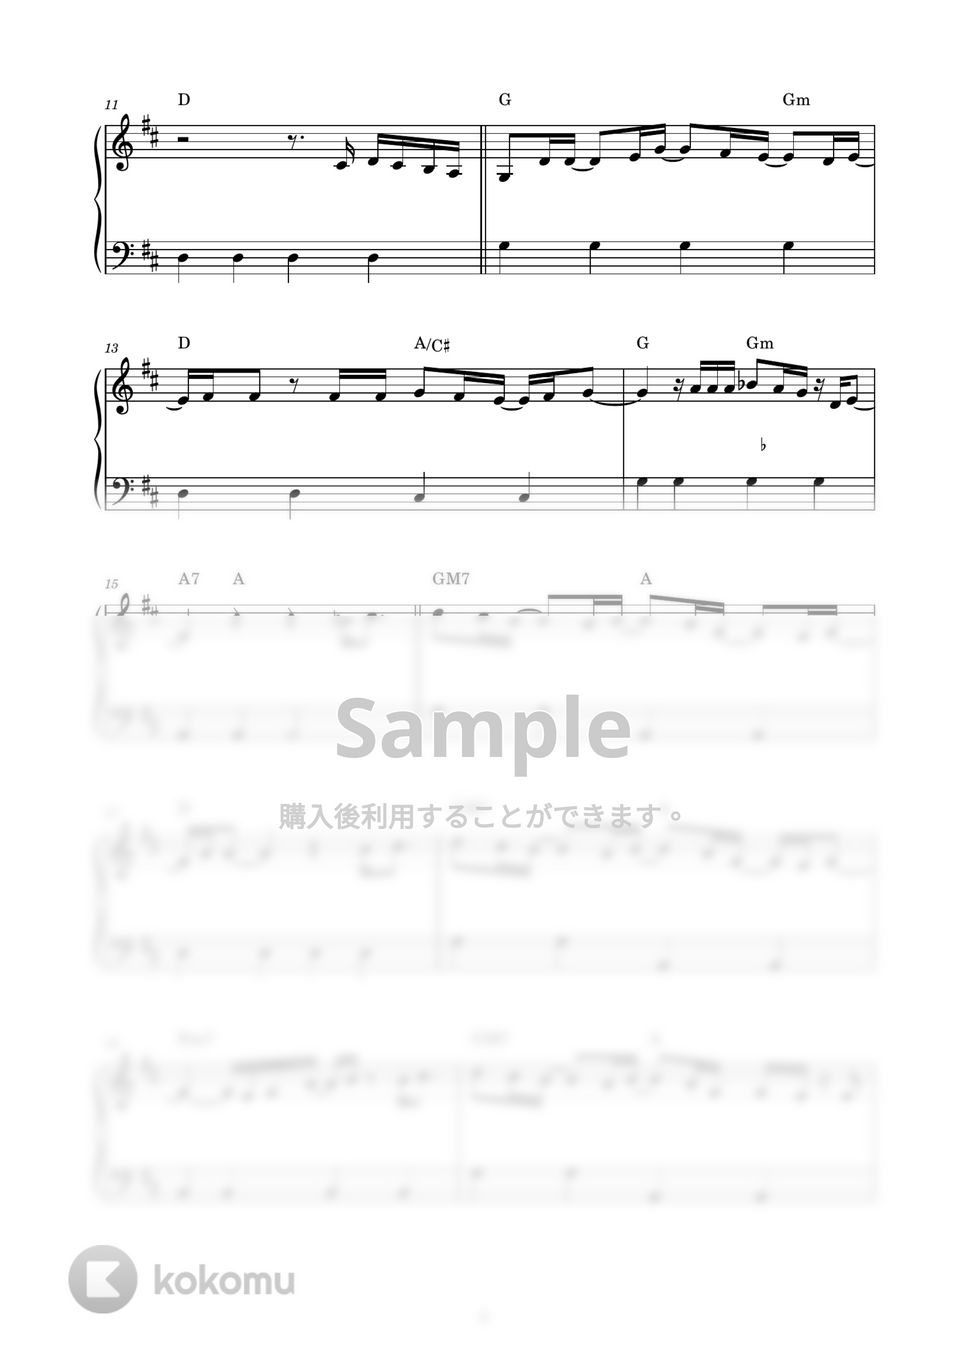 幾田りら - レンズ (ピアノ楽譜 / かんたん両手 / 歌詞付き / ドレミ付き / 初心者向き) by piano.tokyo